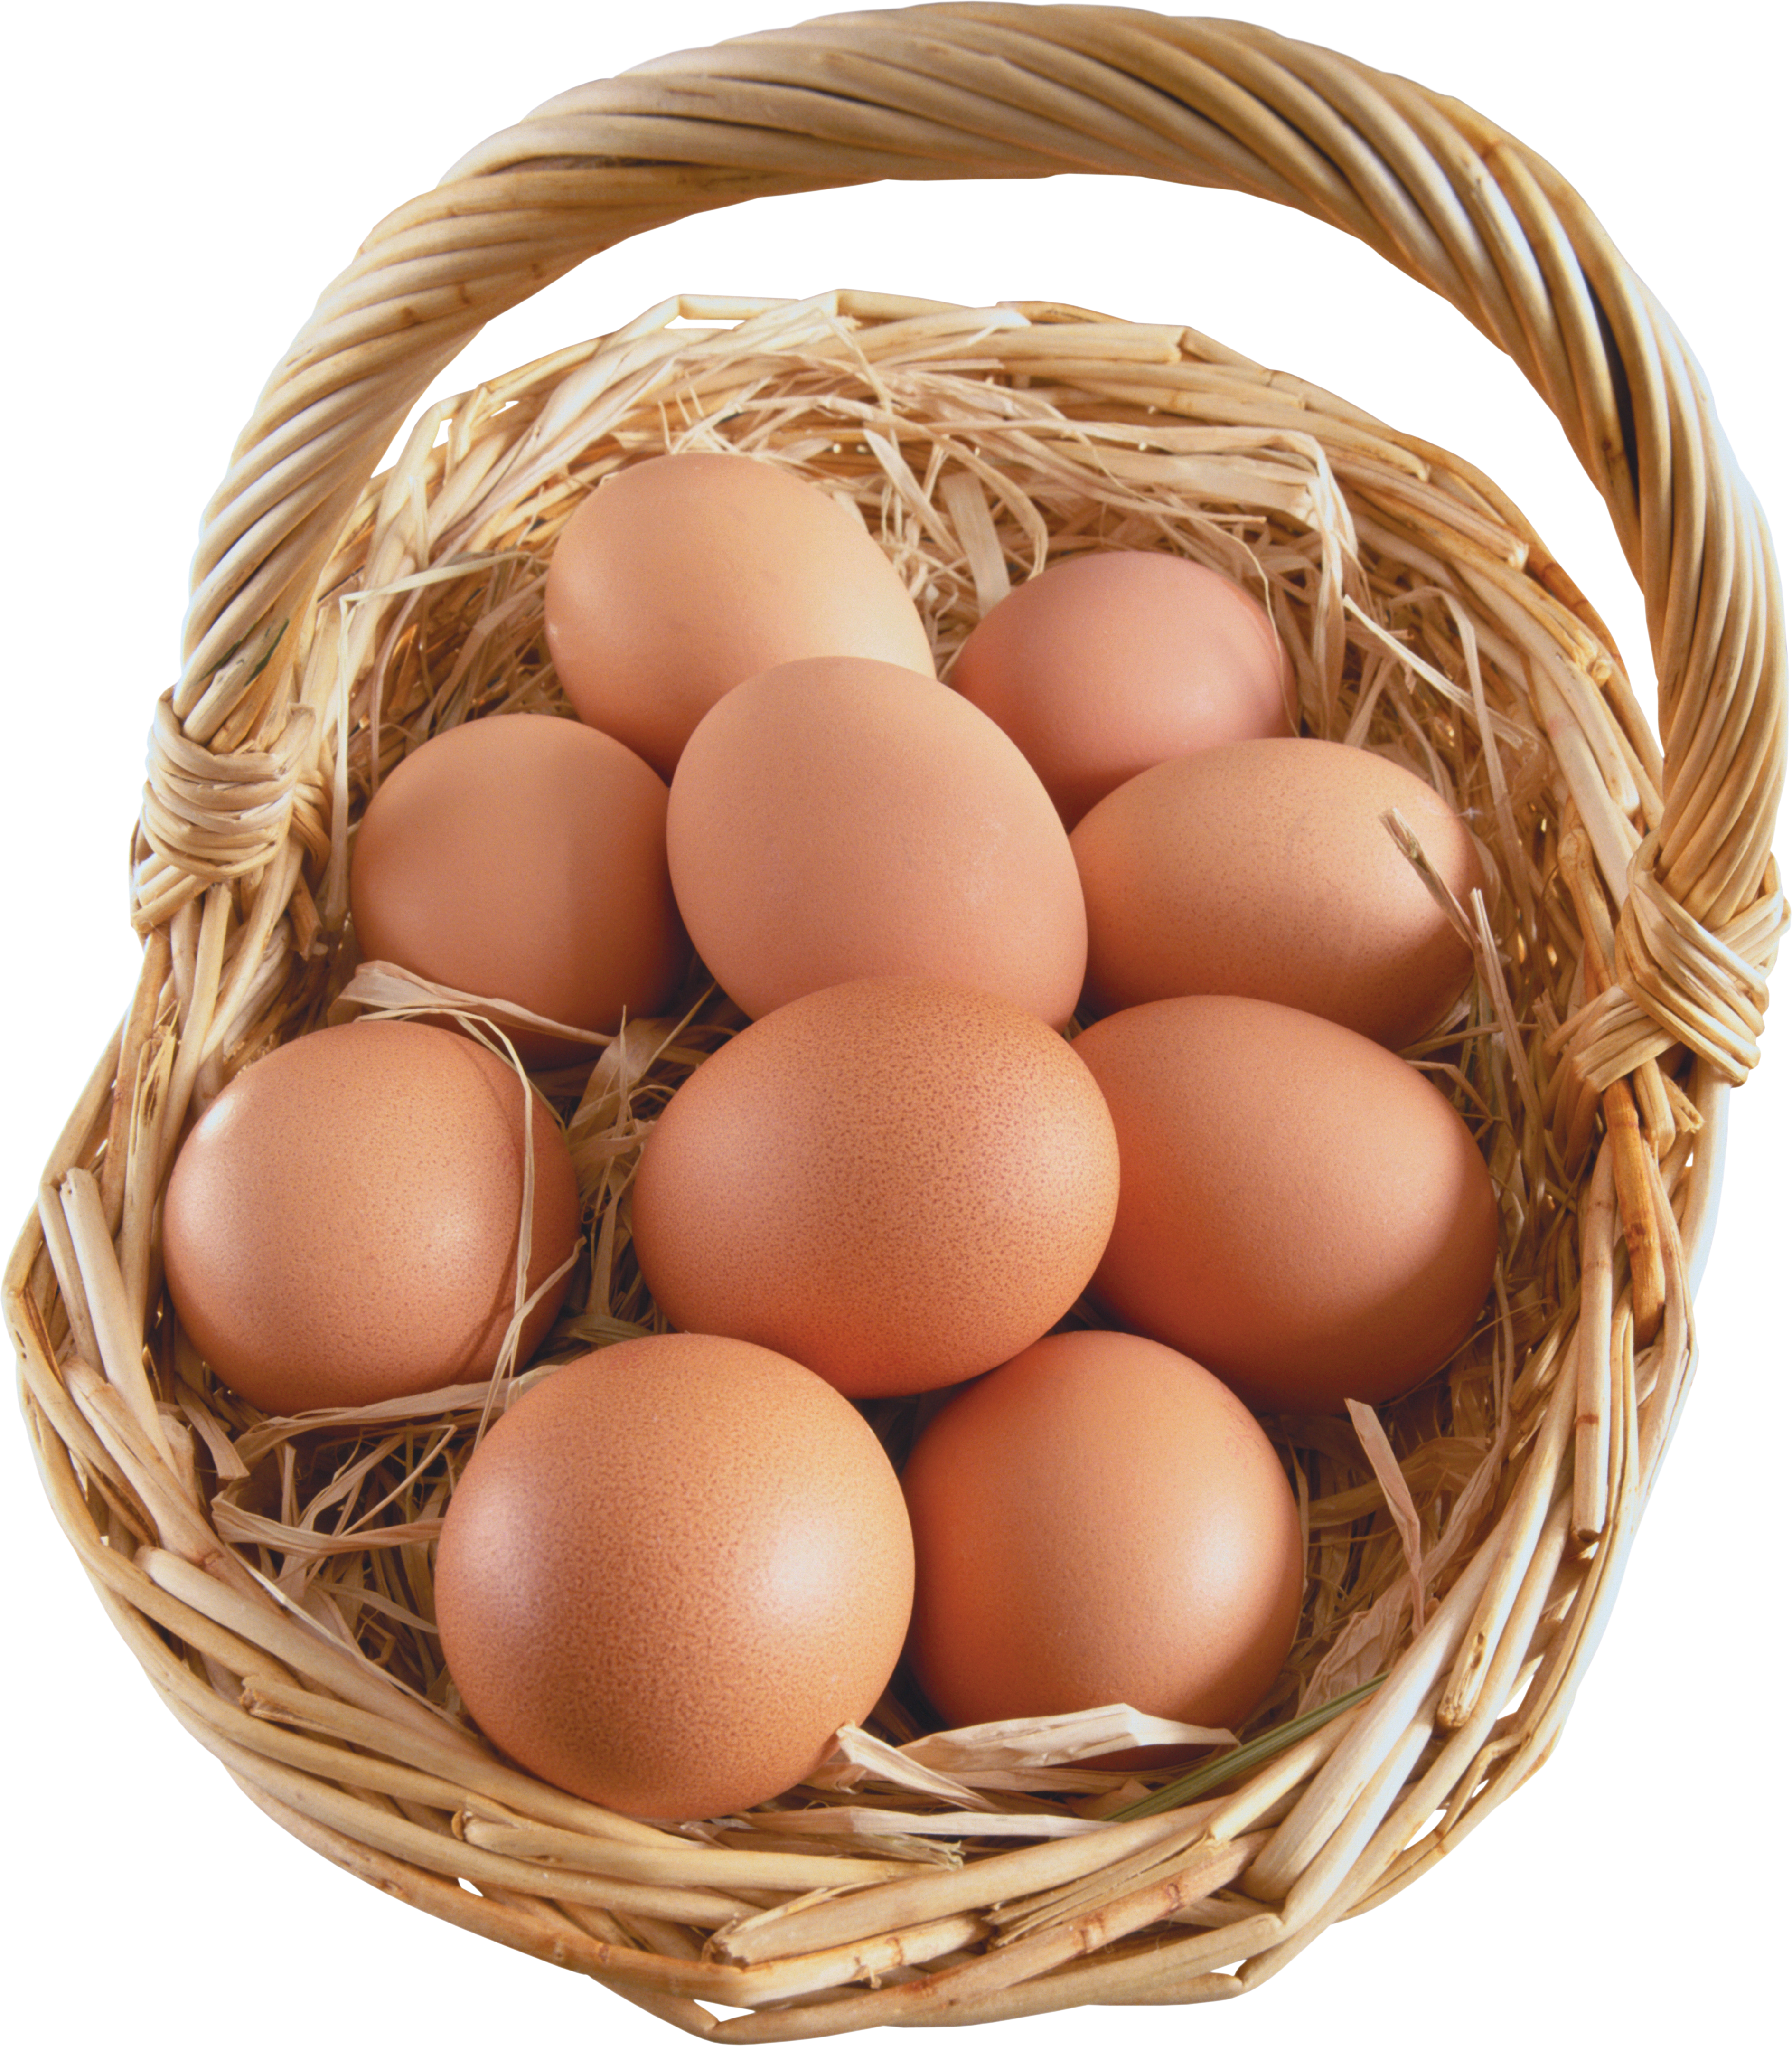 Sepetteki yumurtalar